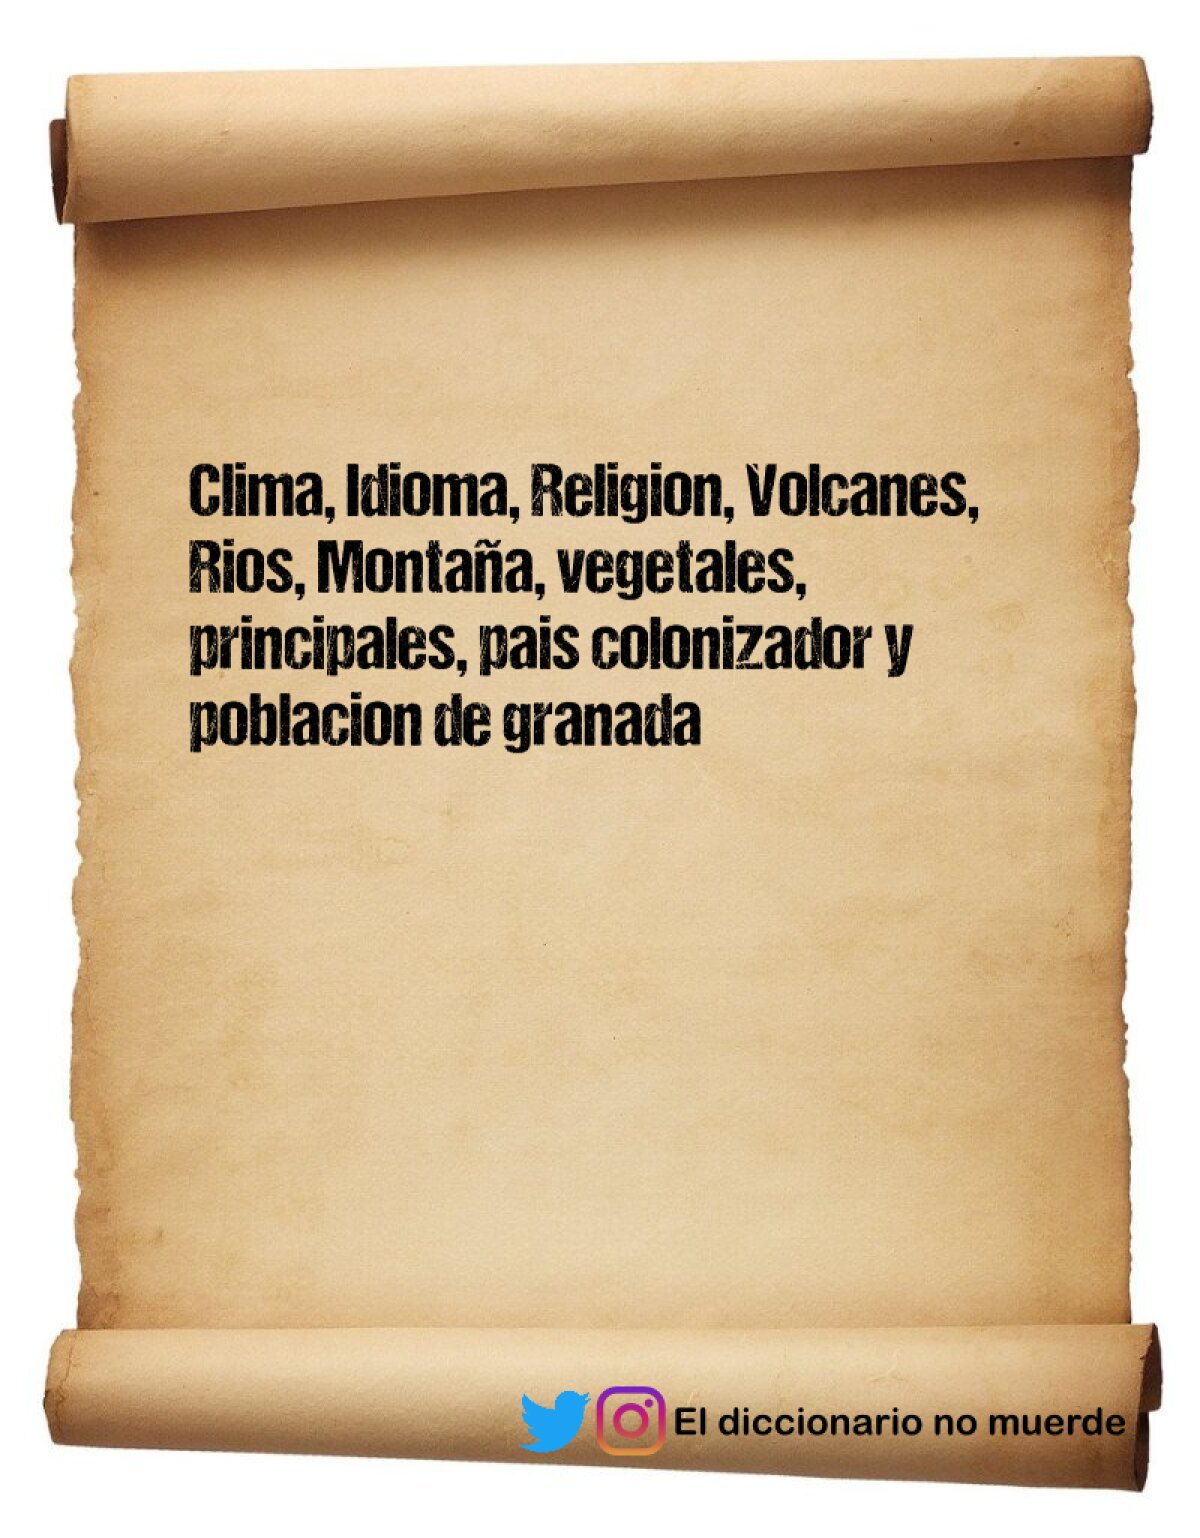 Clima, Idioma, Religion, Volcanes, Rios, Montaña, vegetales, principales, pais colonizador y poblacion de granada